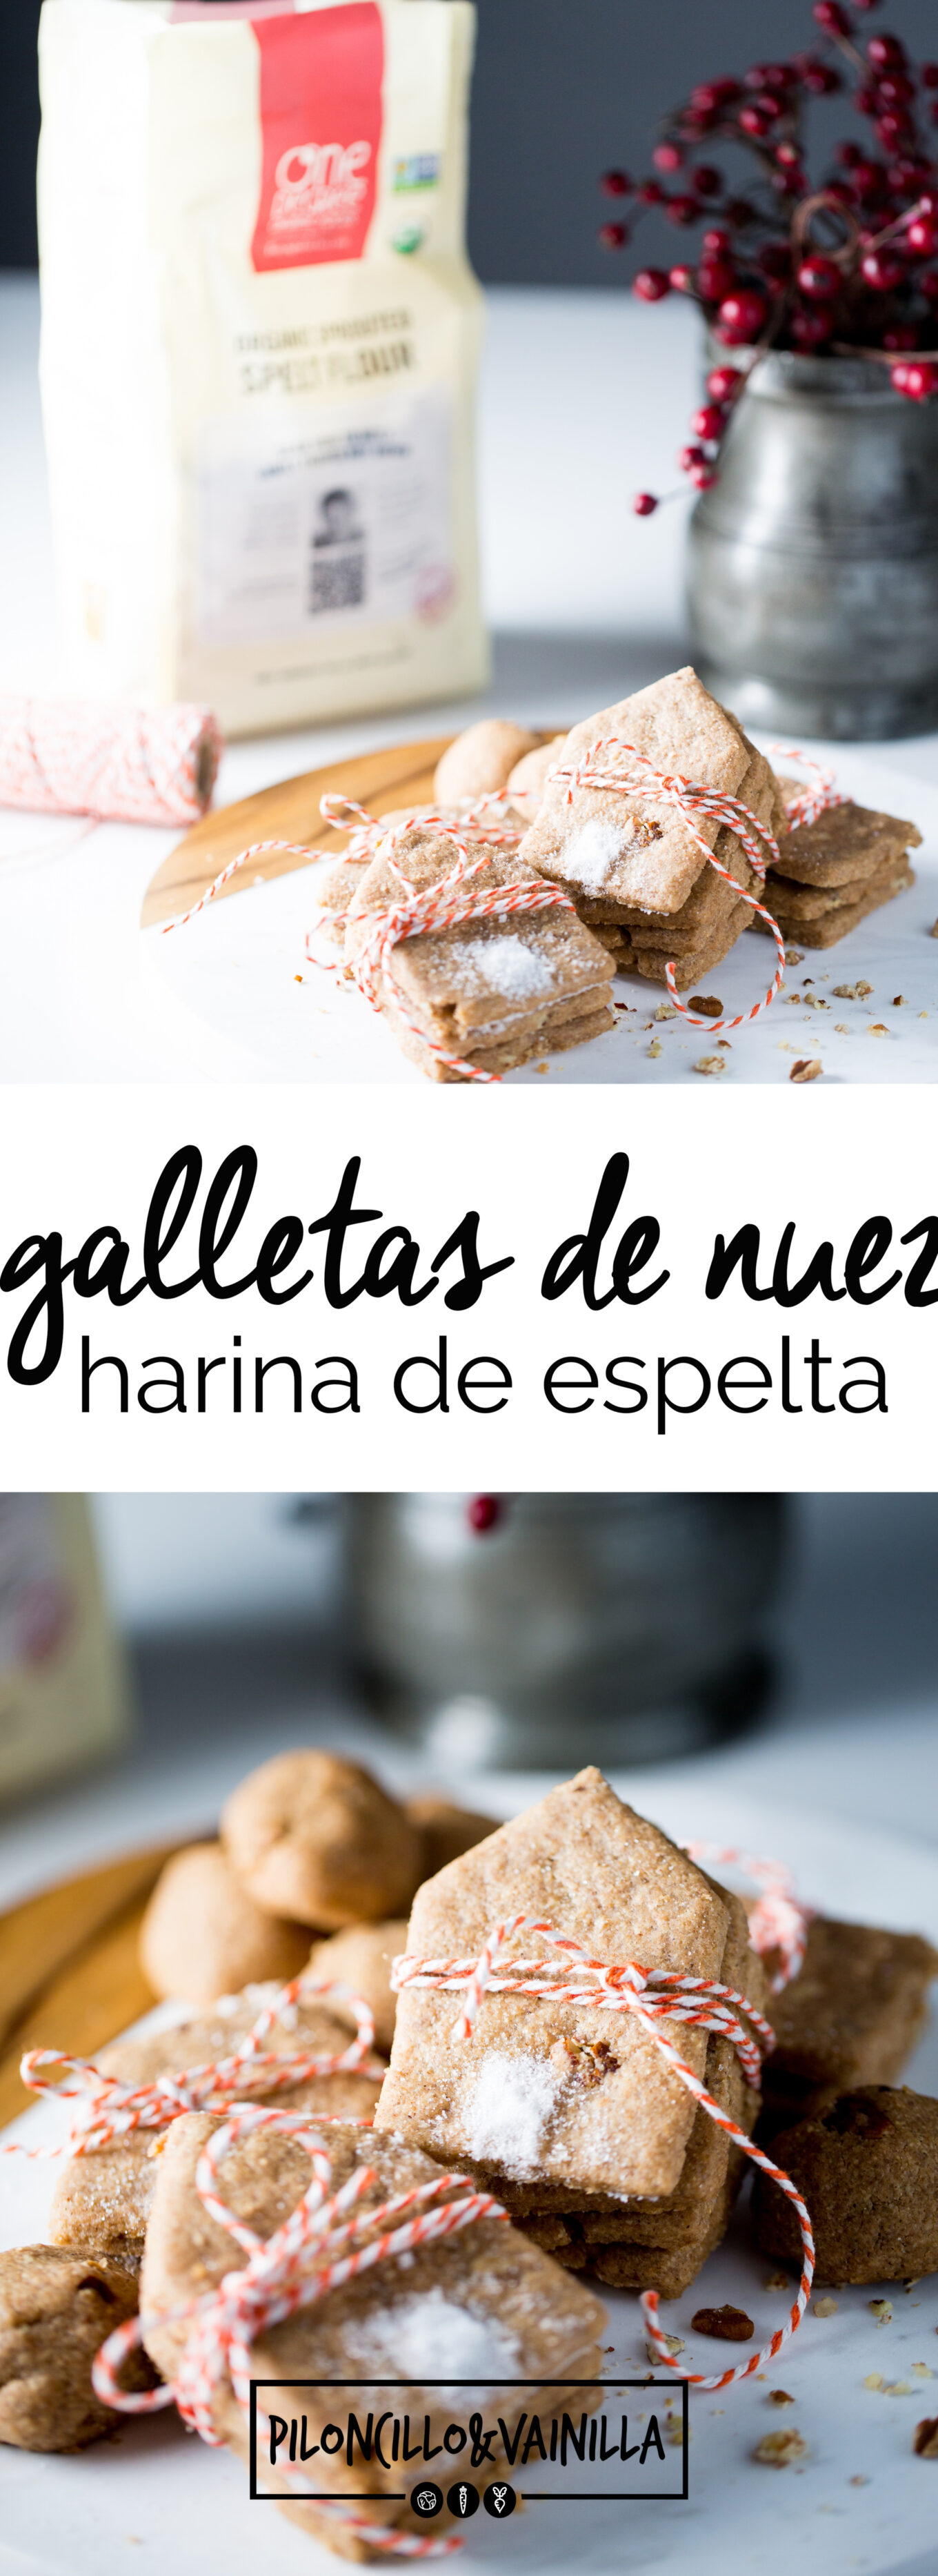 Receta de galletas de nuez hechas con harina de espelta, galletas sanas, galletas veganas, receta en español de galletas de navidad.